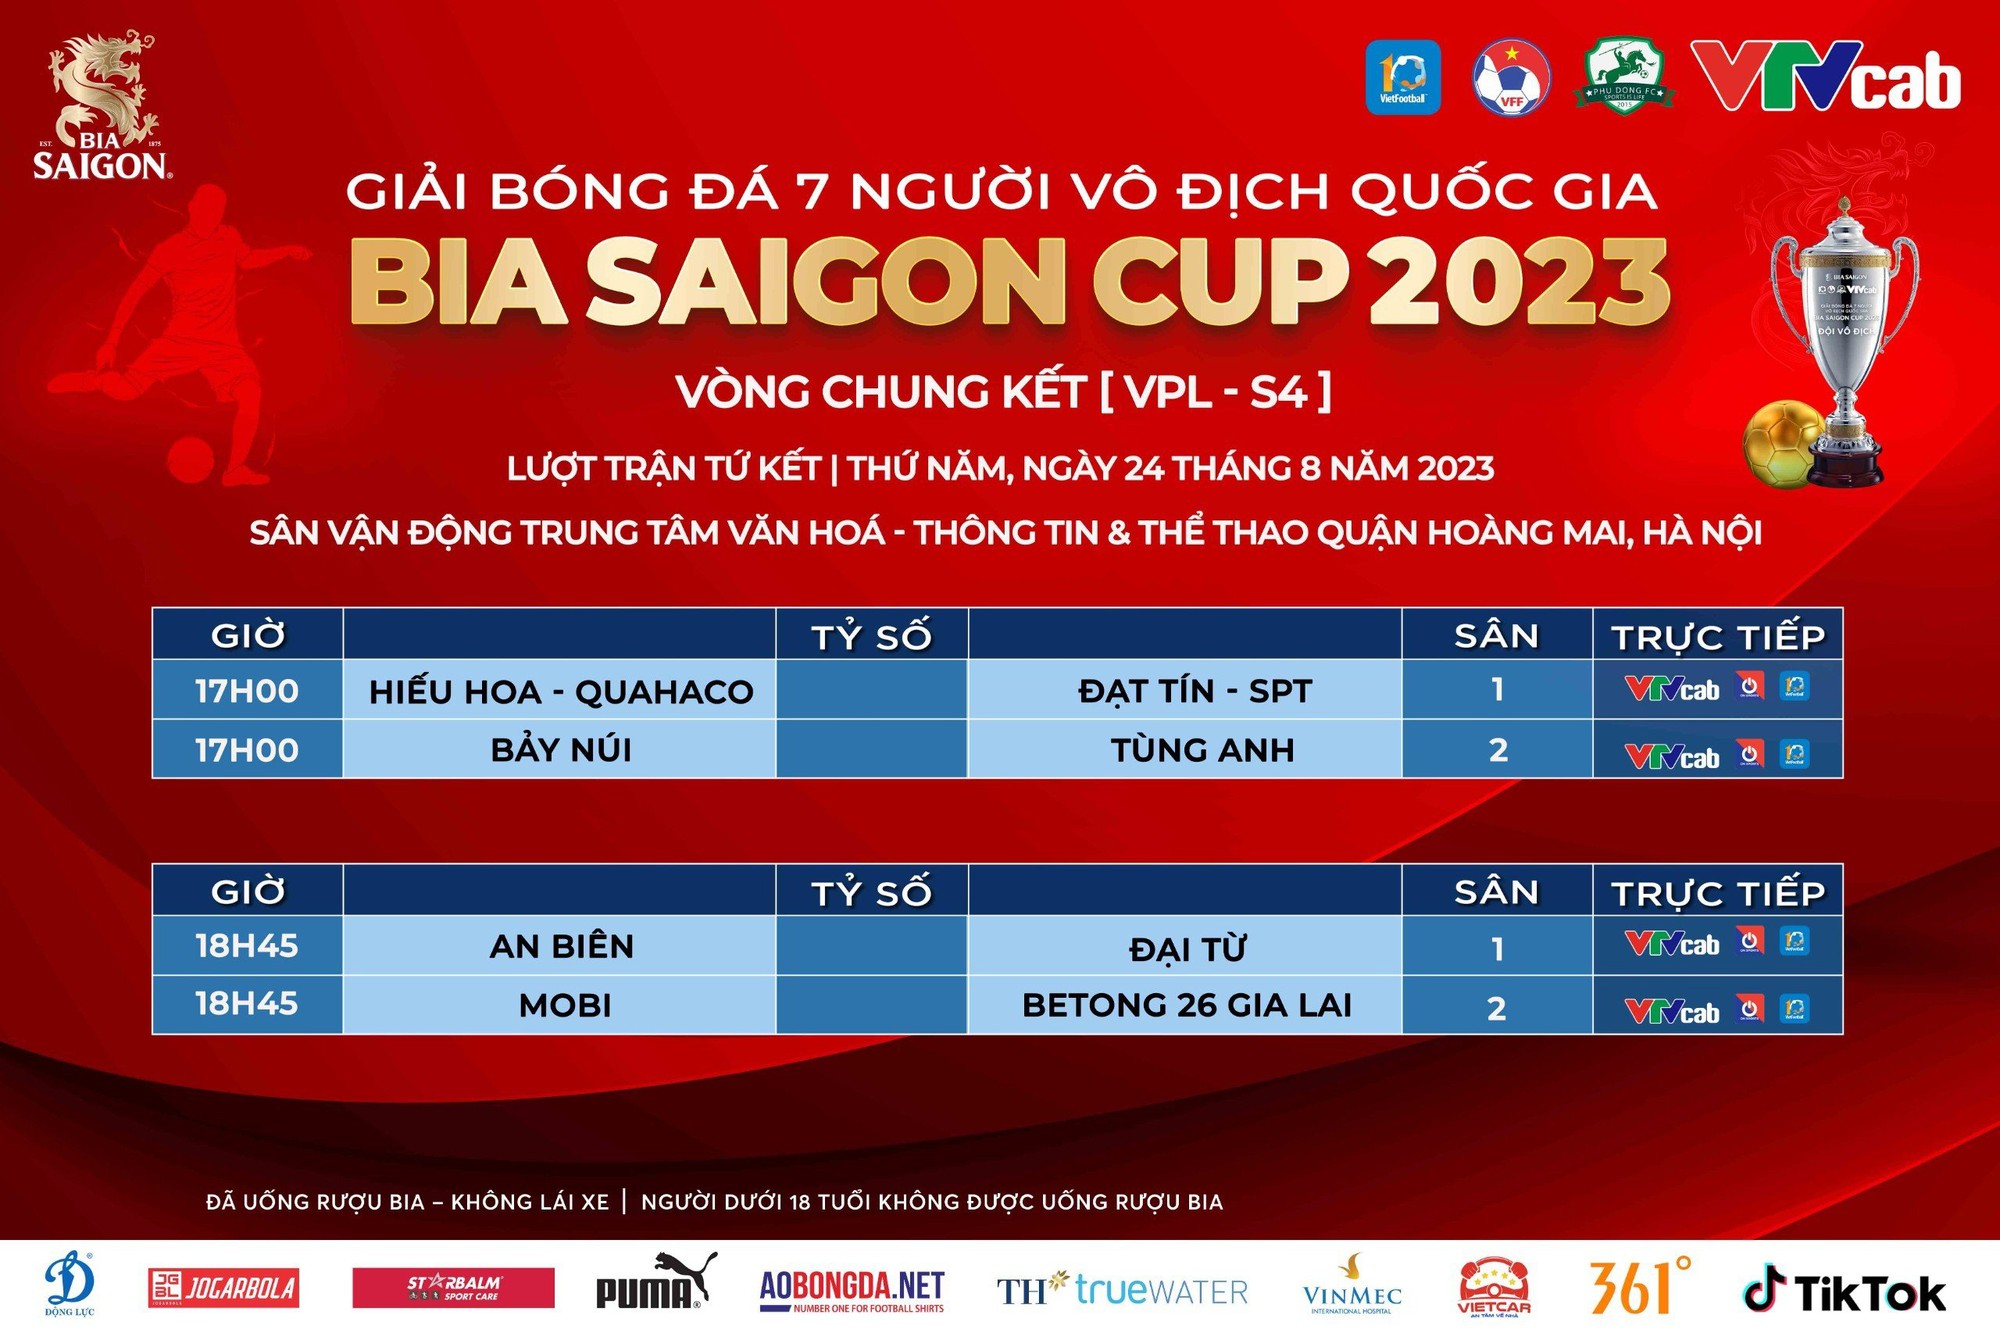 &quot;Bát hùng&quot; tranh tài tại VCK Giải bóng đá 7 người vô địch quốc gia - Bia Saigon Cup 2023  - Ảnh 6.